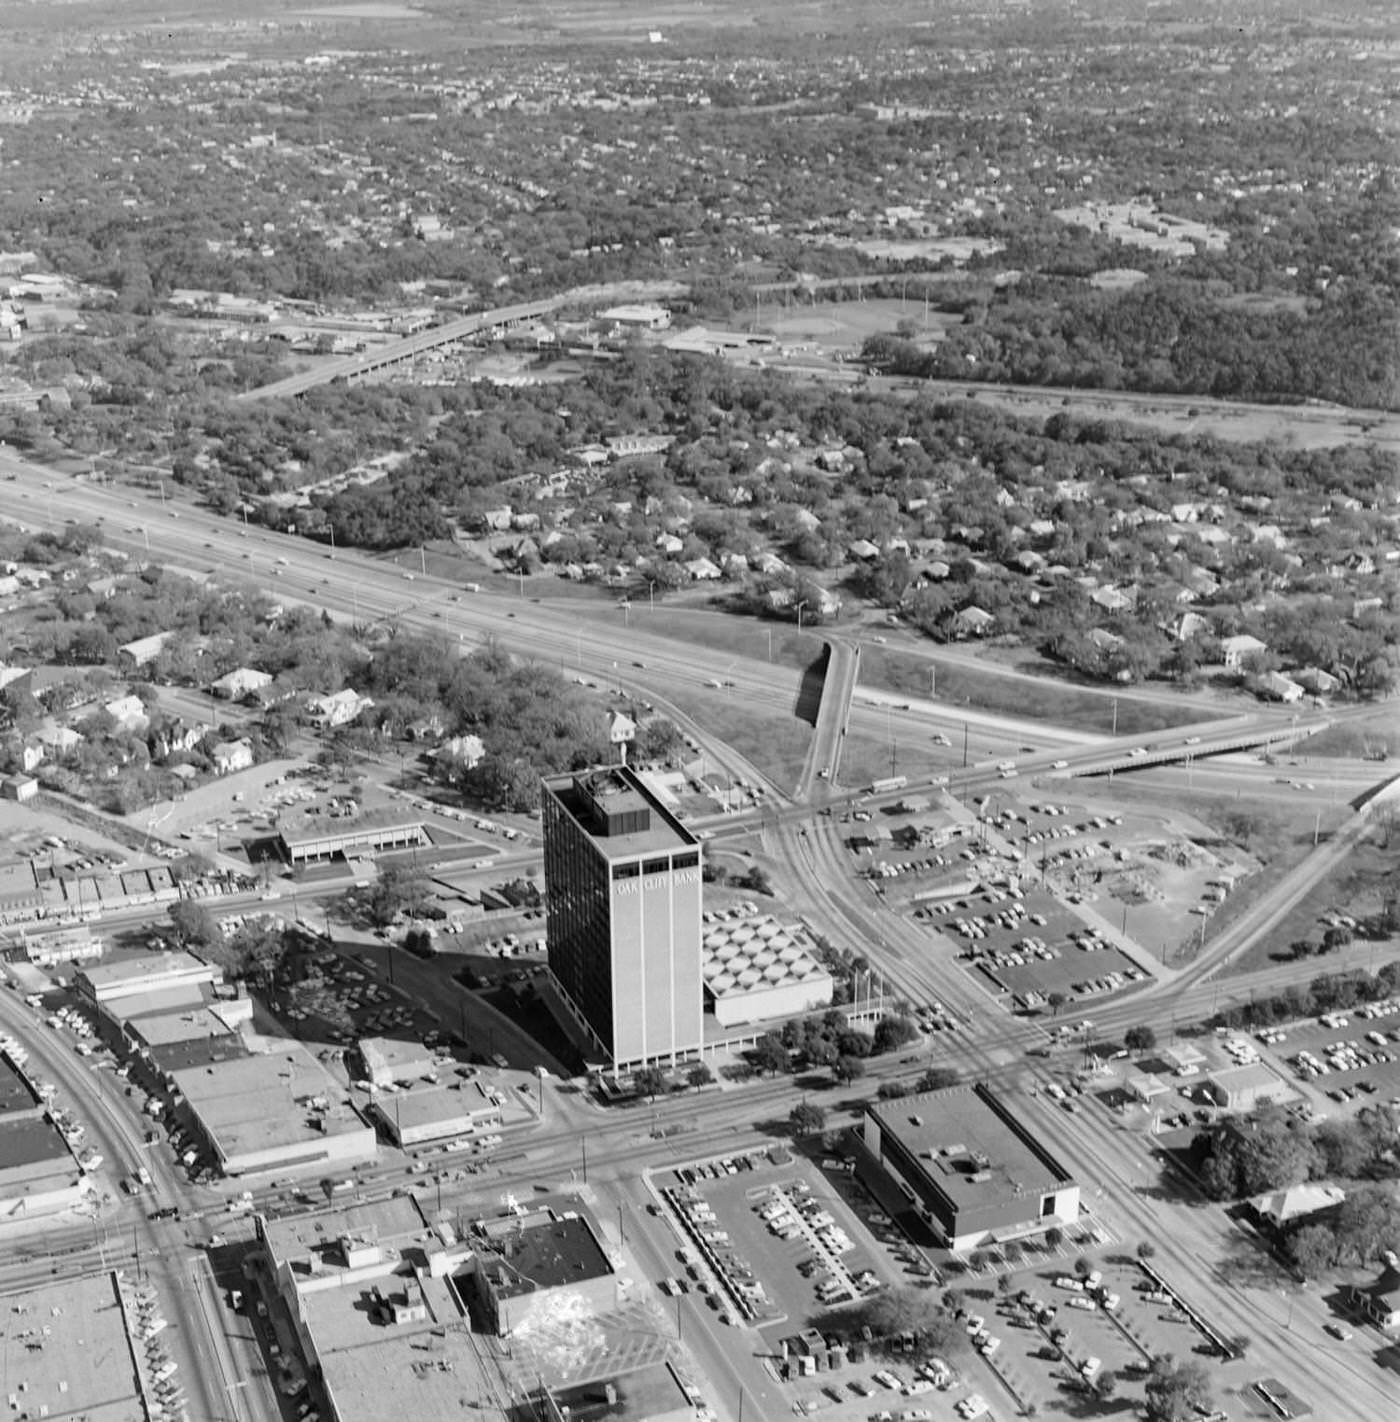 Aerial view of Oak Cliff area in Dallas, 1969